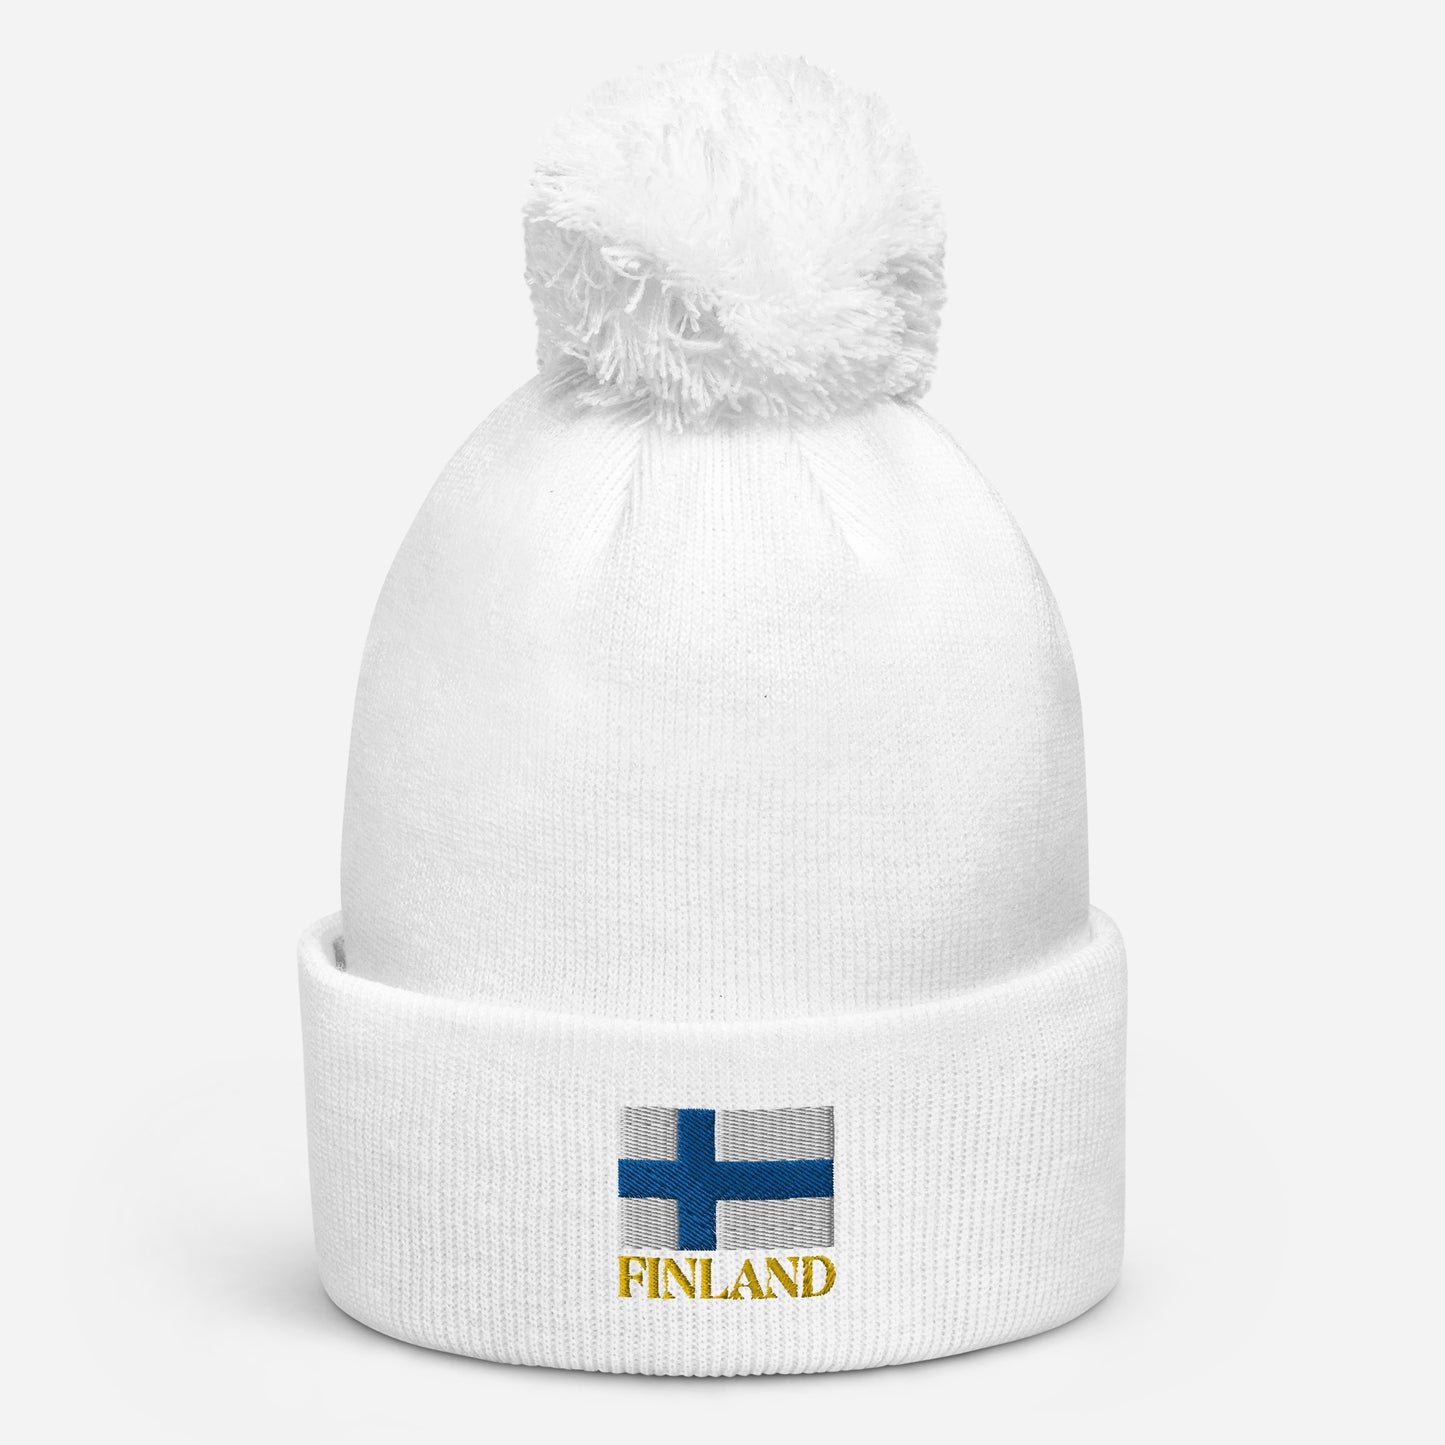 "Finland" beanie with tassel